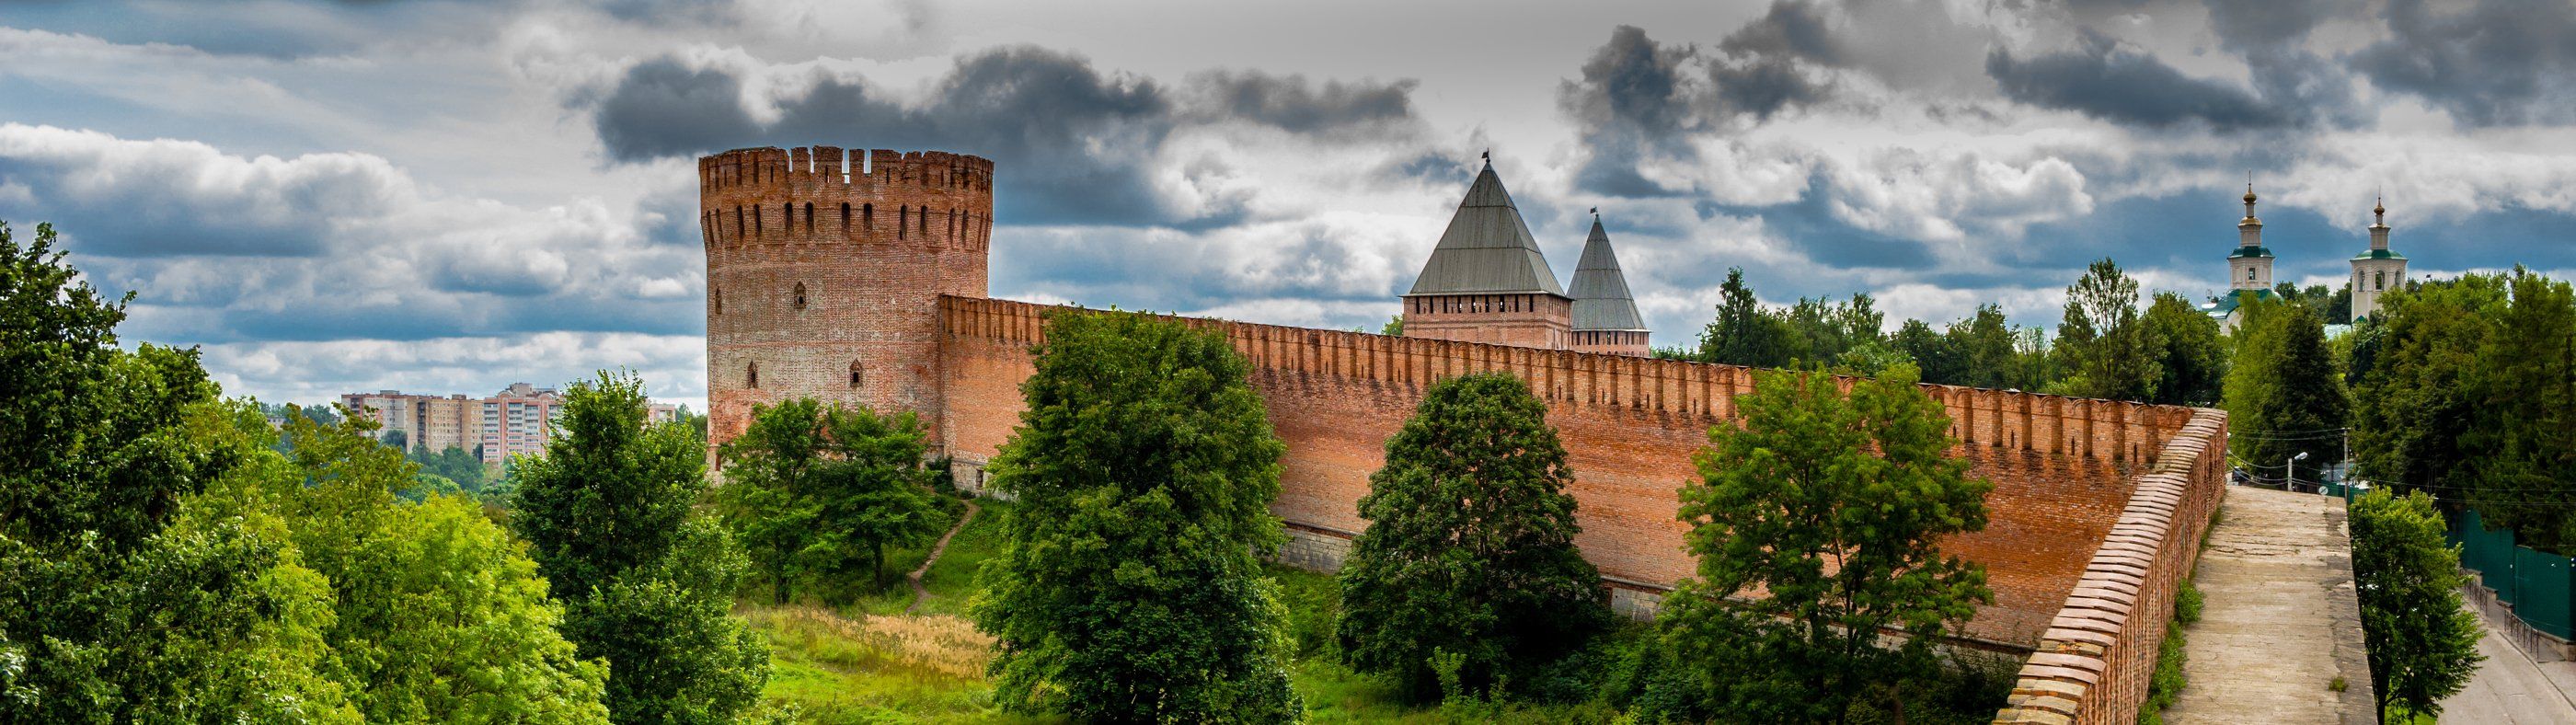 смоленск, крепостная стена, кремль, город, Руслан Востриков